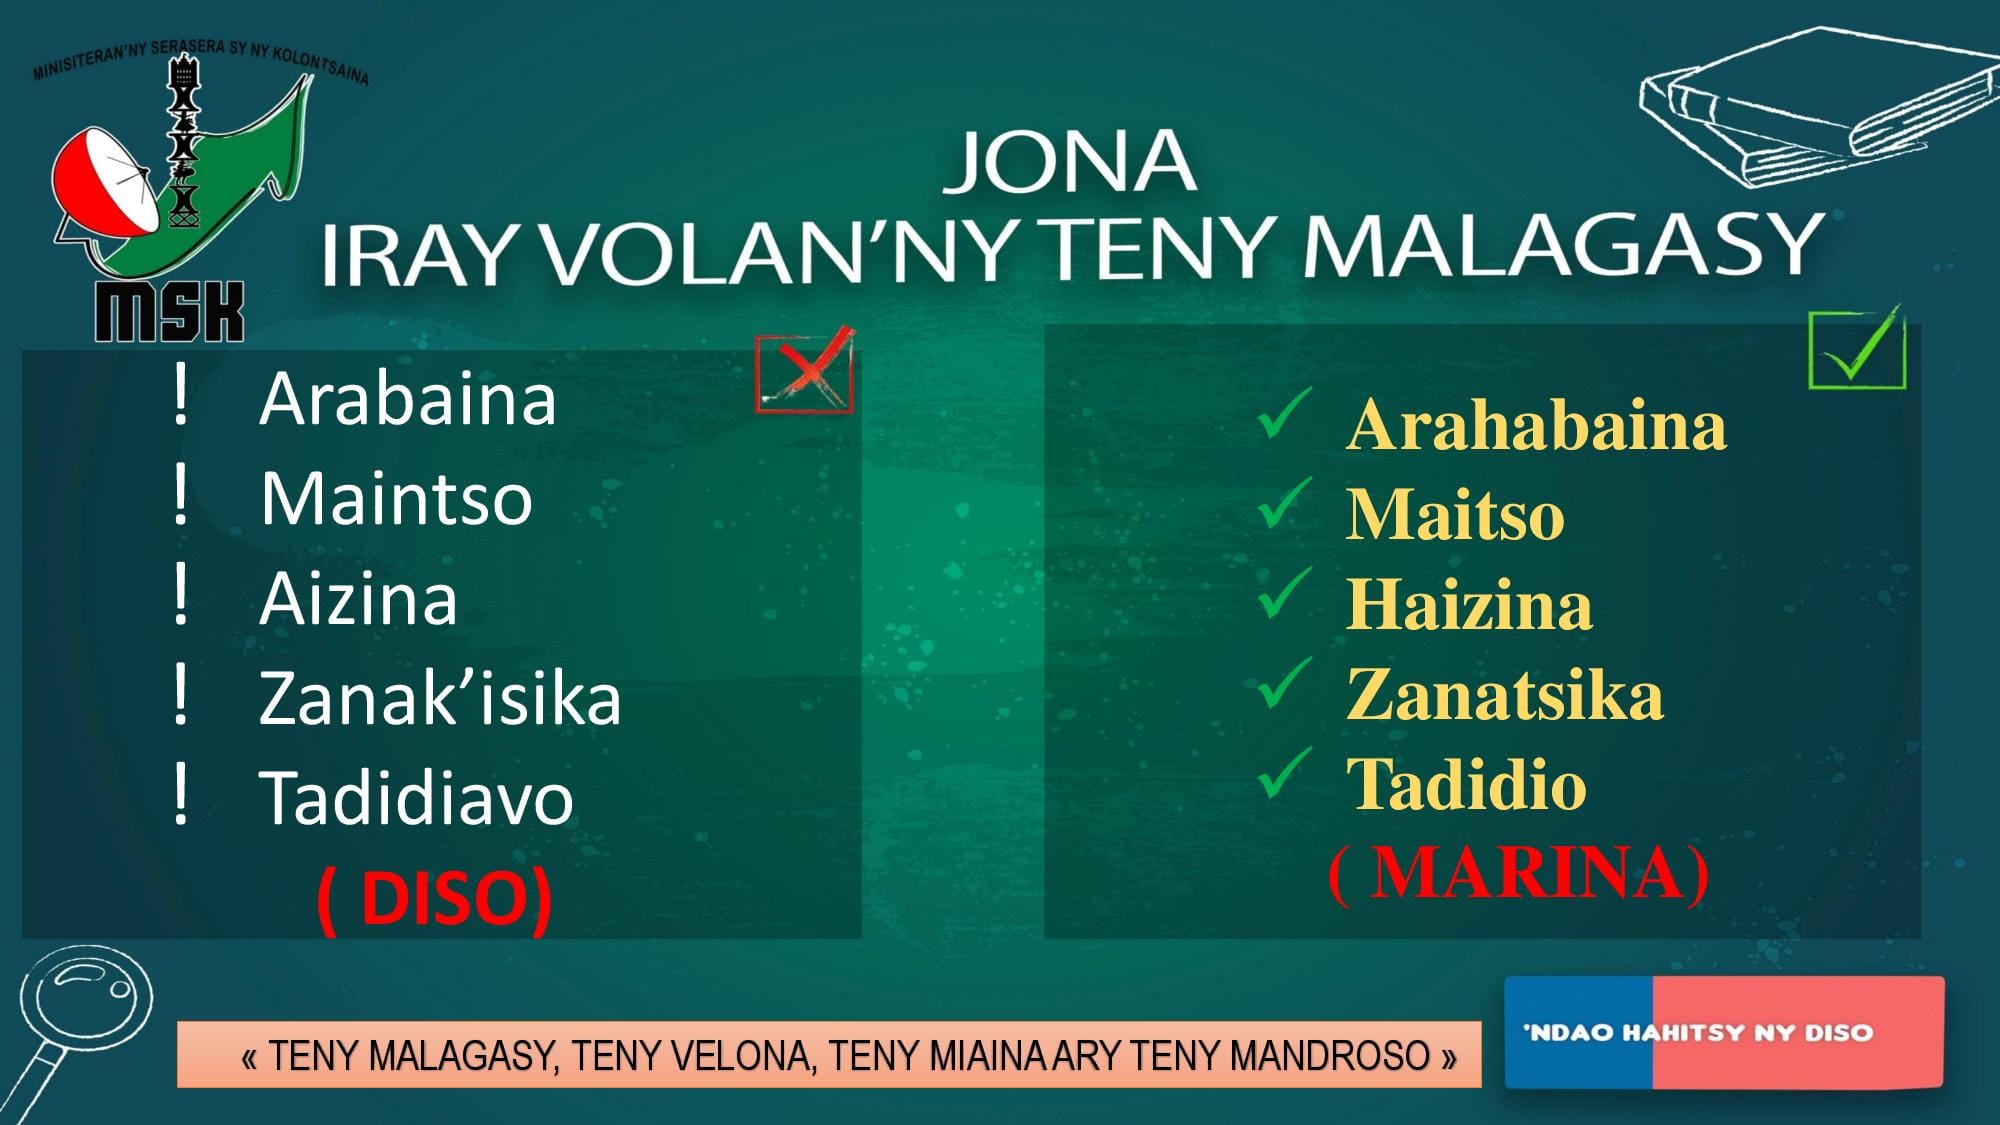 VOLANA JONA: IRAY VOLAN’ NY TENY MALAGASY